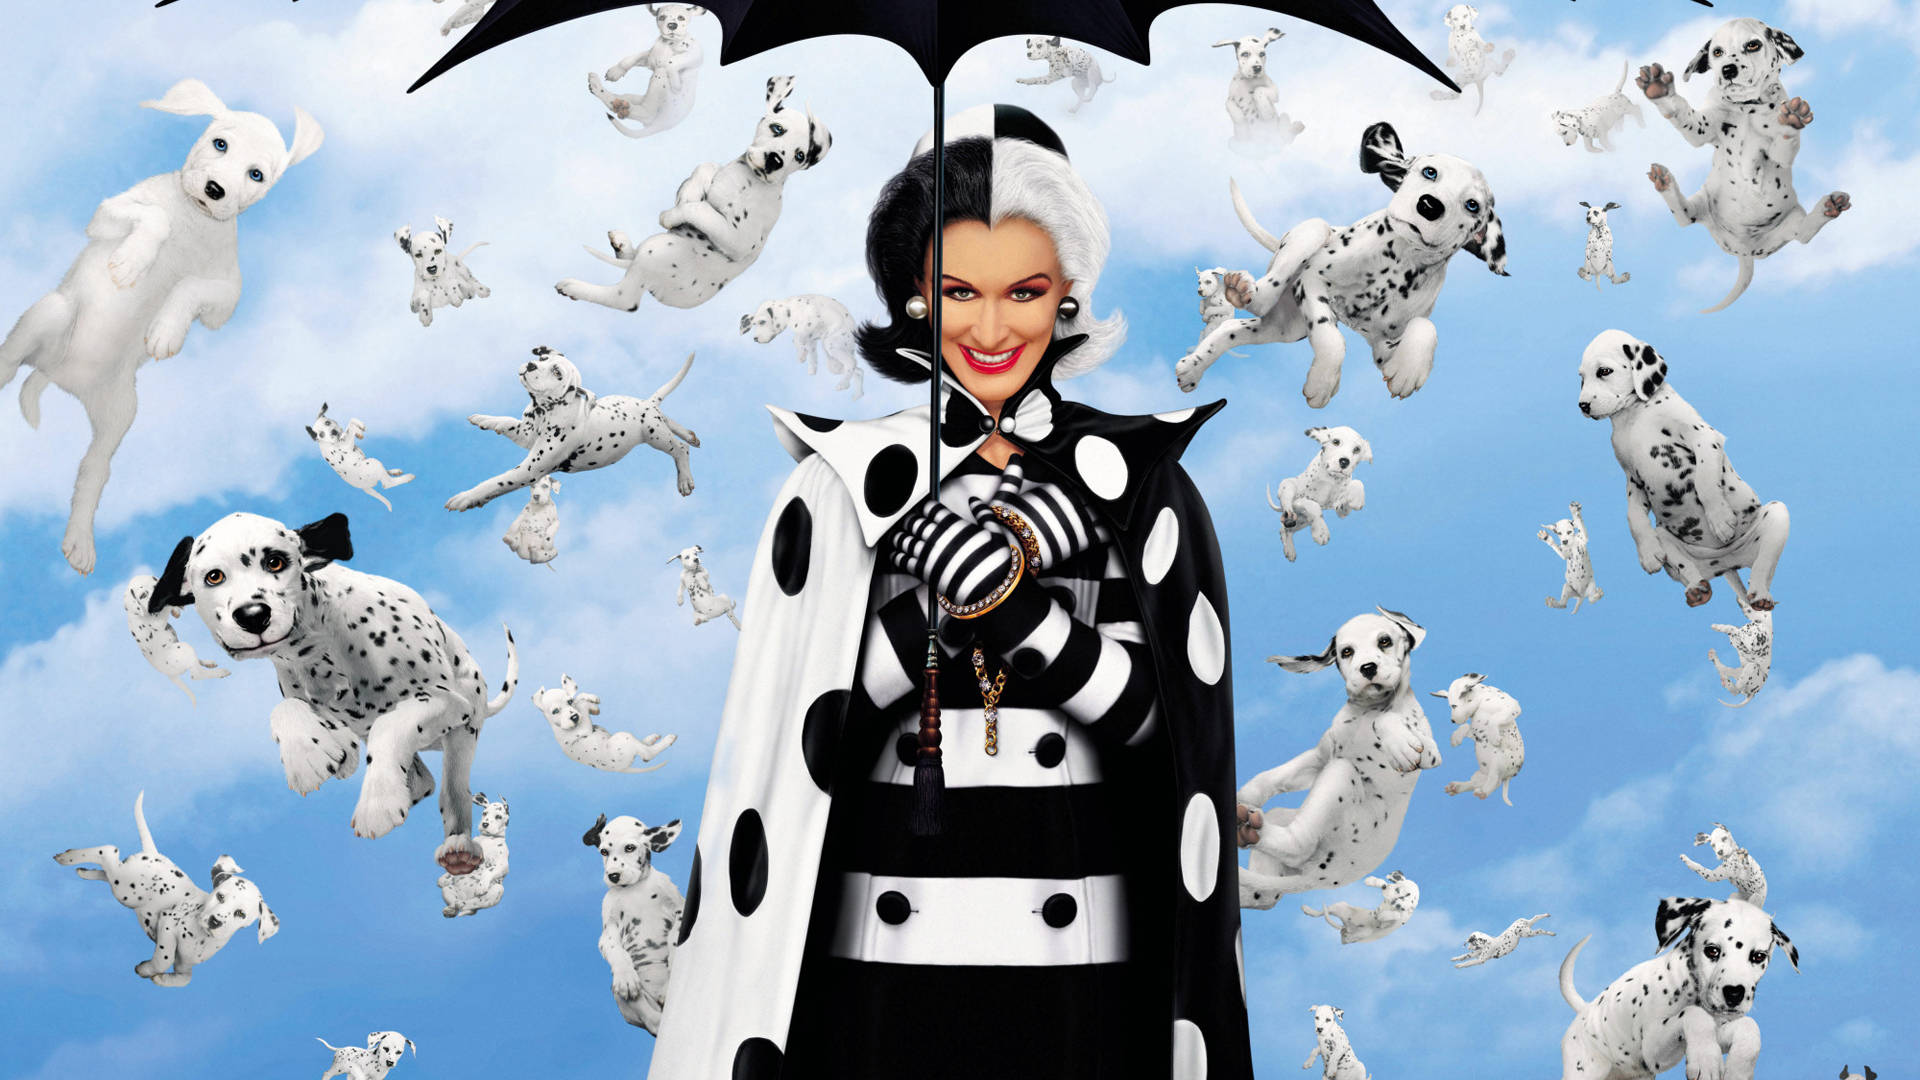 101 Dalmatians Rain Background